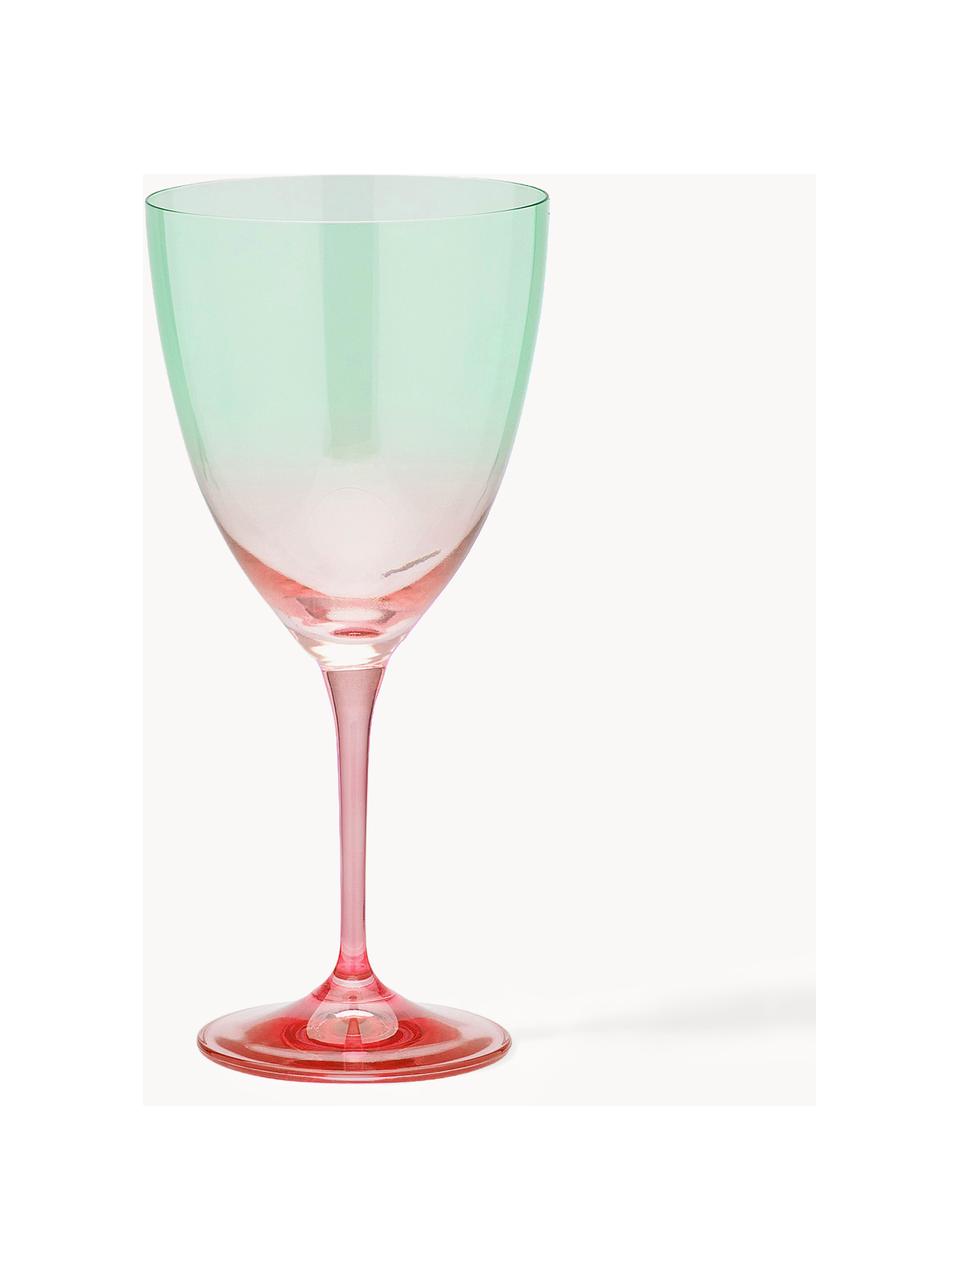 Wijnglazen Ombre Flash, 2 stuks, Glas, Turquoise groen, koraalrood, Ø 10 x H 12 cm, 400ml